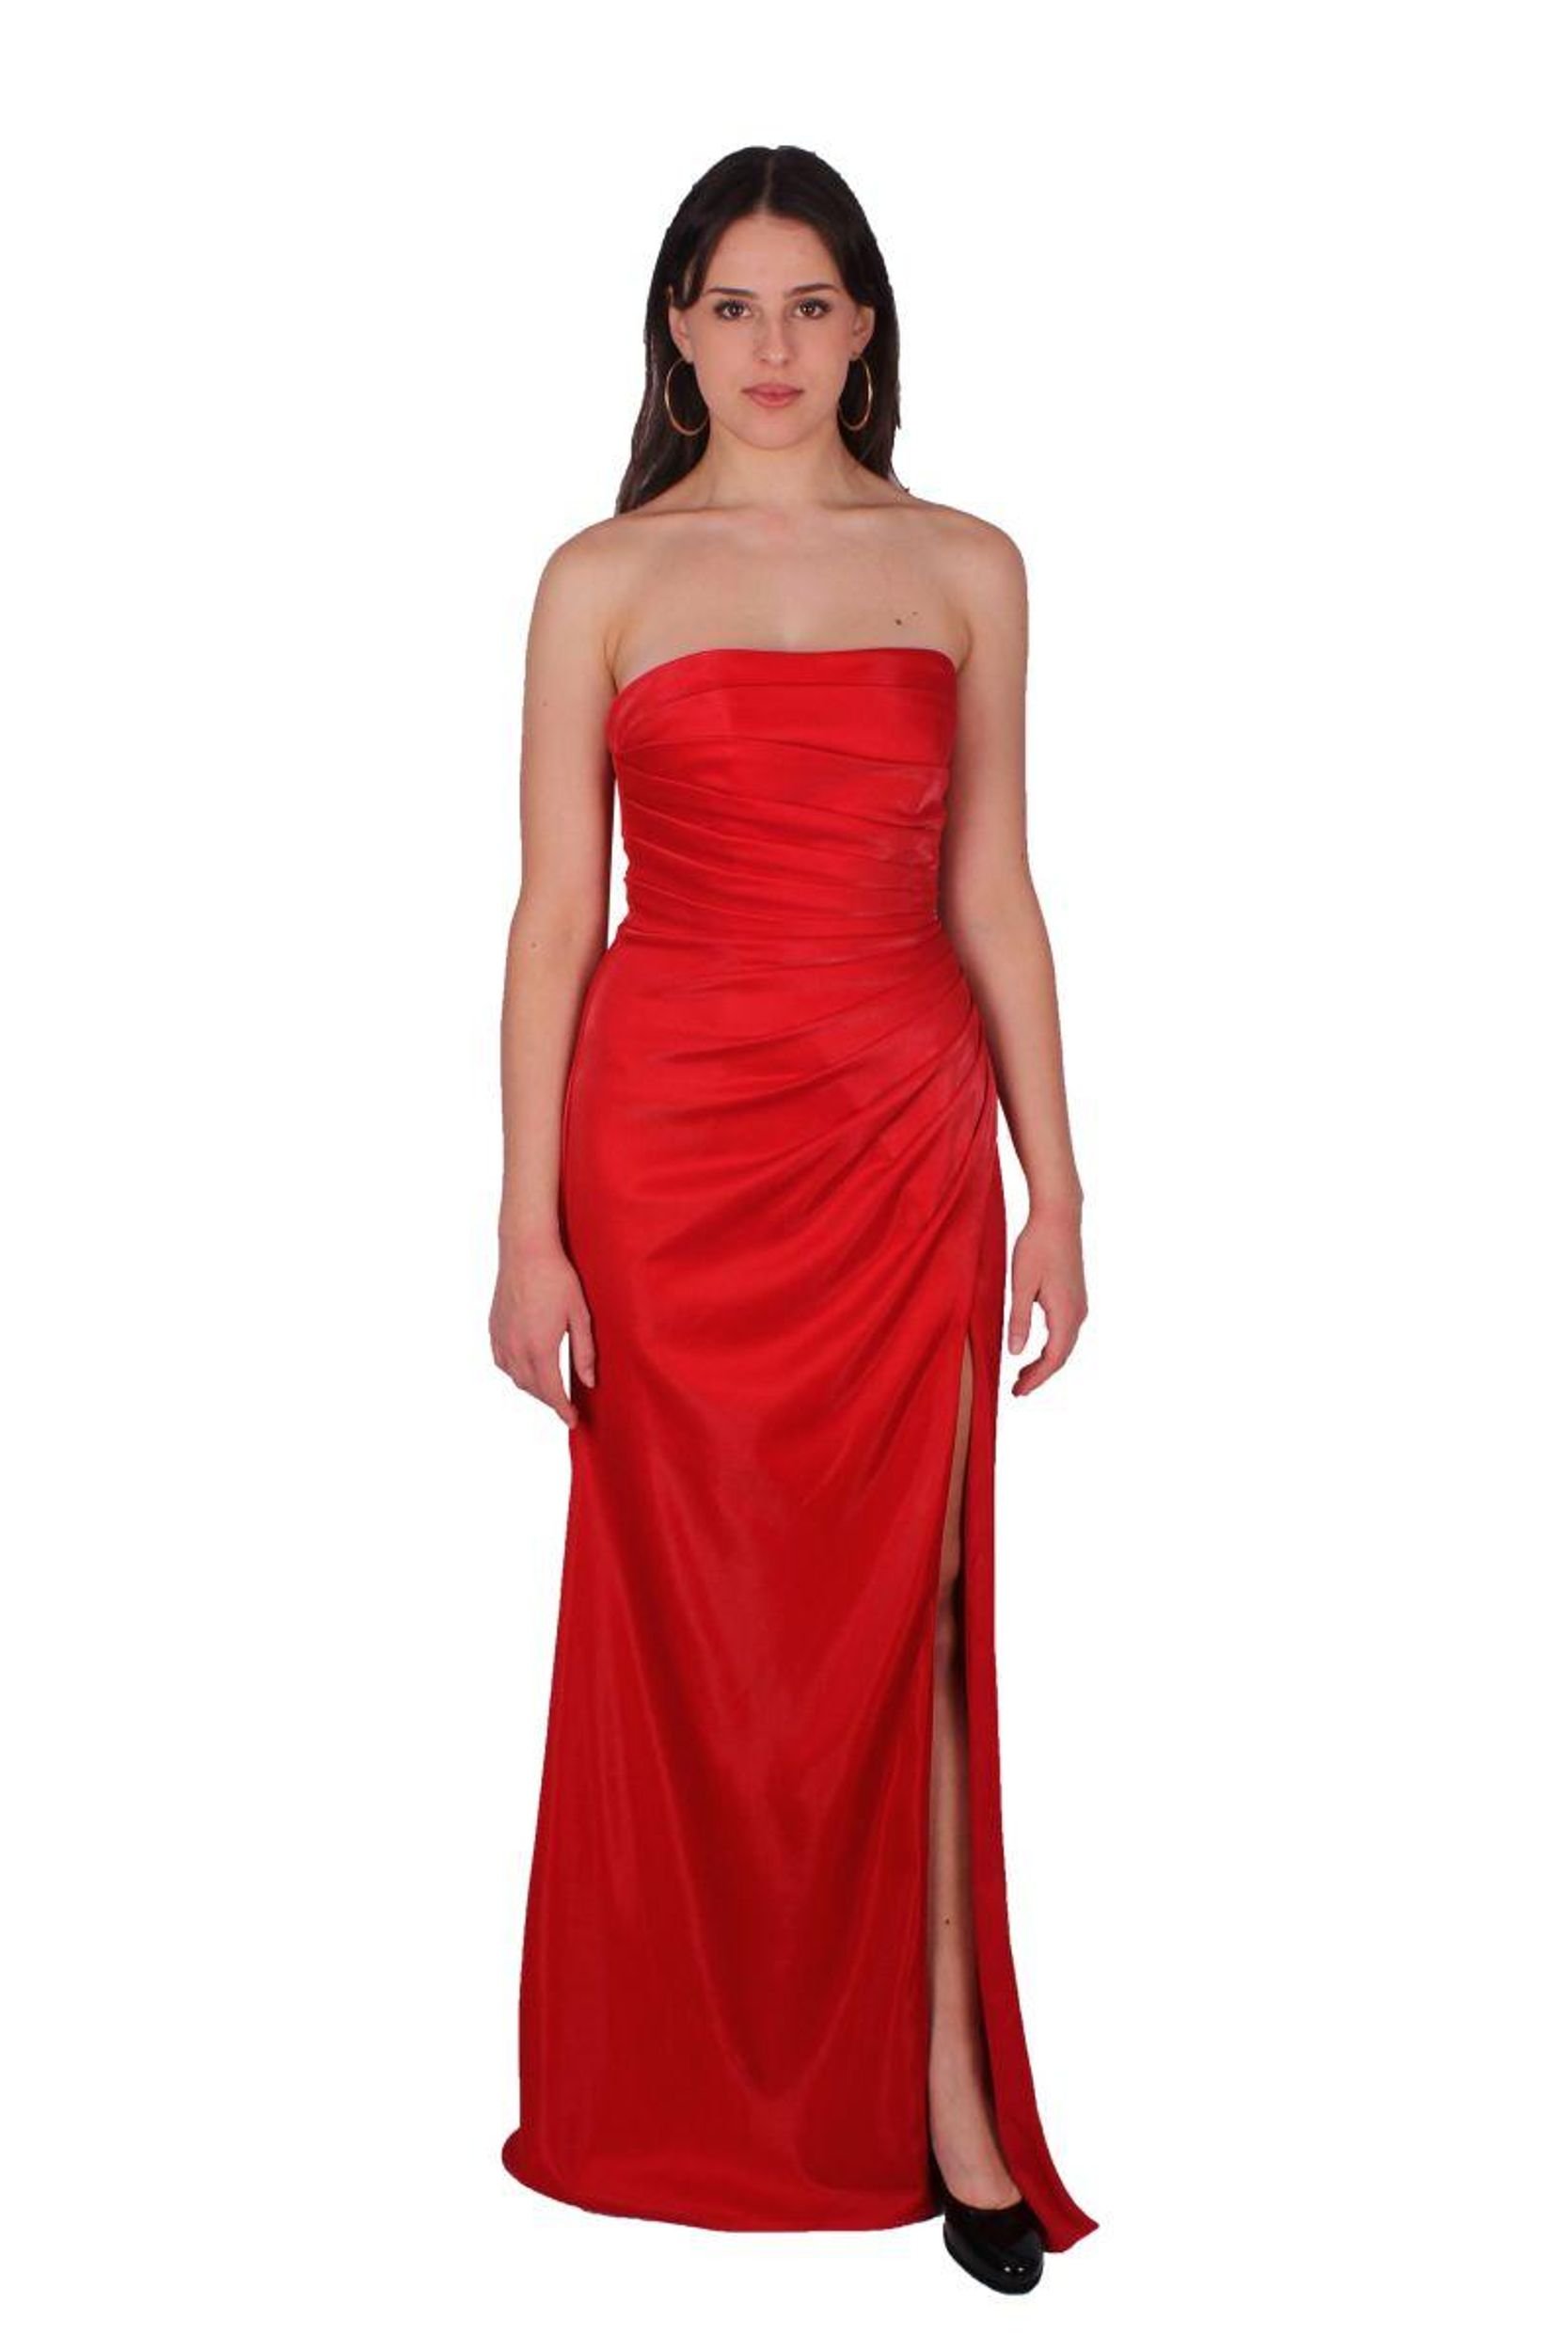 "Rotes Abendkleid von Luxuar: Elegant und Luxuriös"